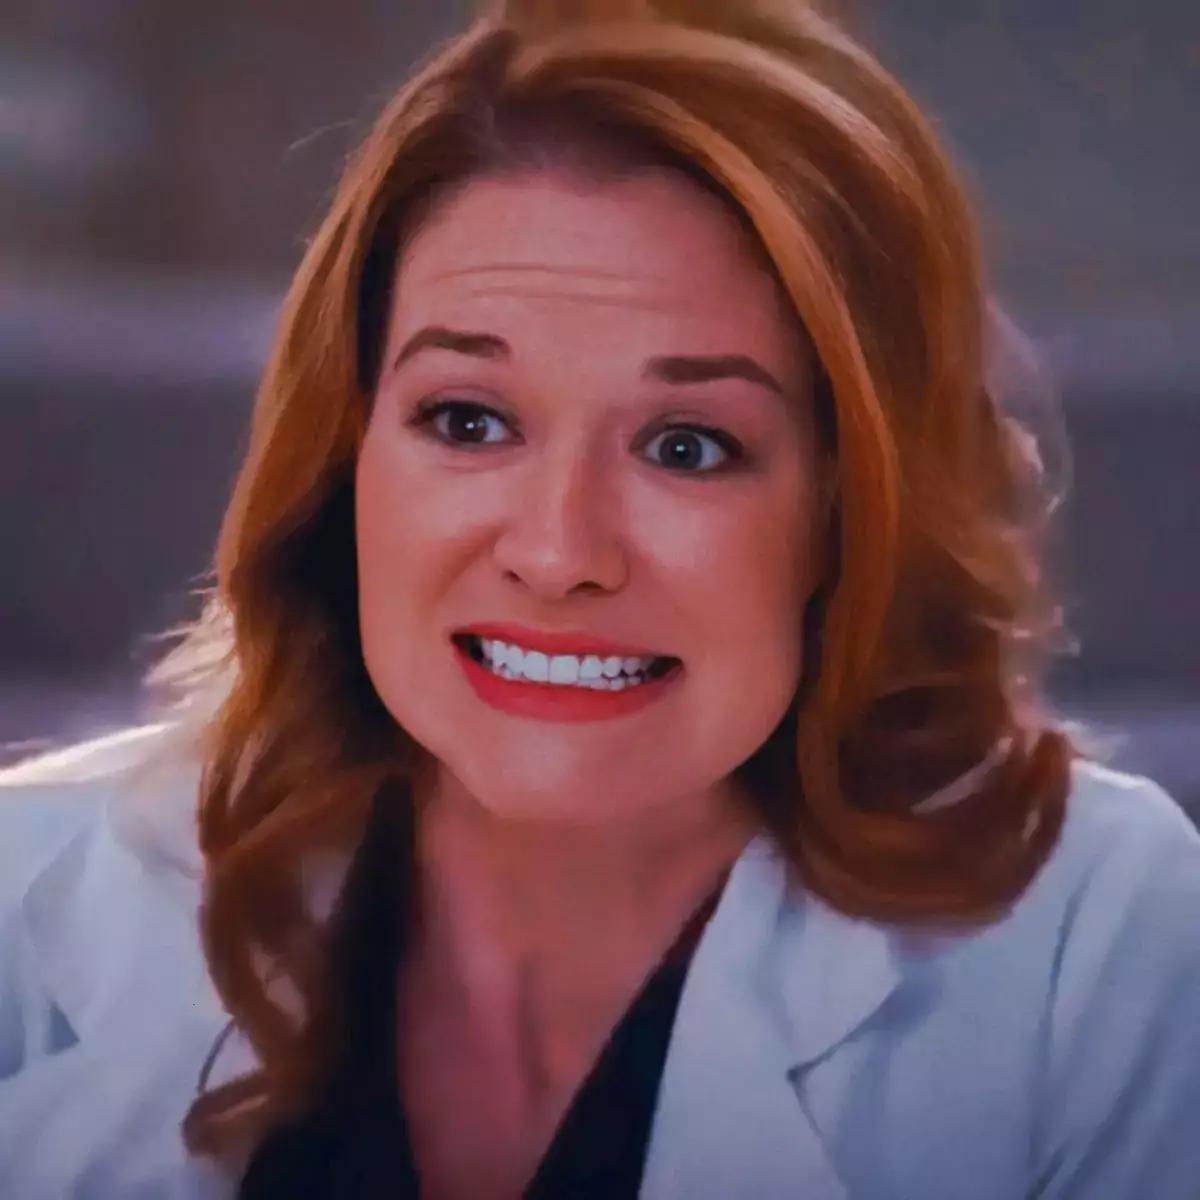 April Kepner from Grey's Anatomy